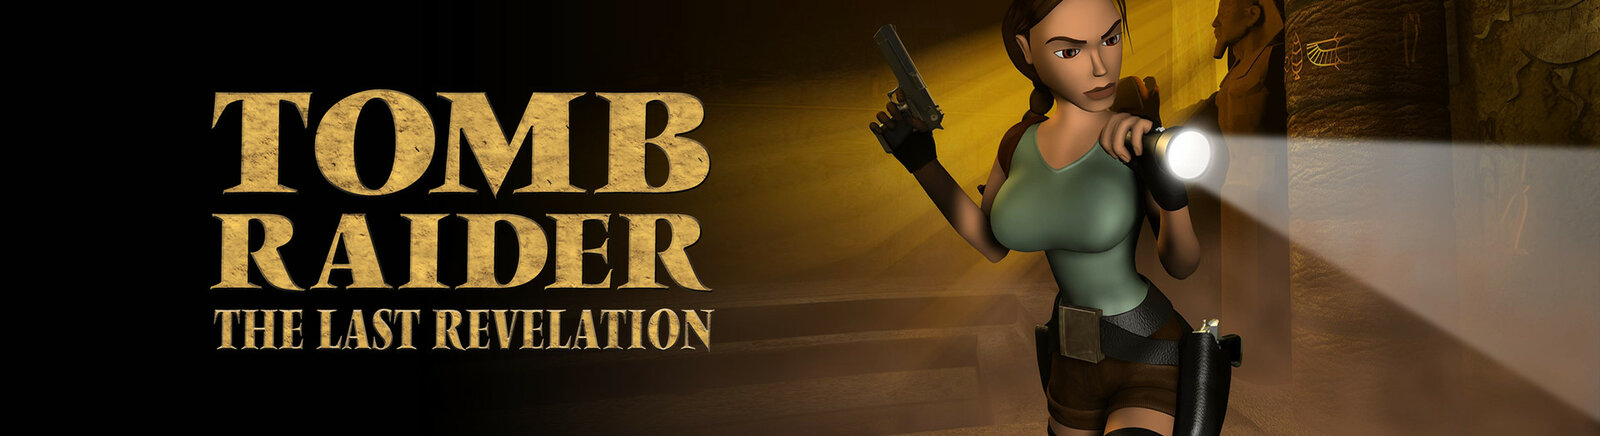 Дата выхода Tomb Raider 4: The Last Revelation  на PC, PS3 и PlayStation в России и во всем мире